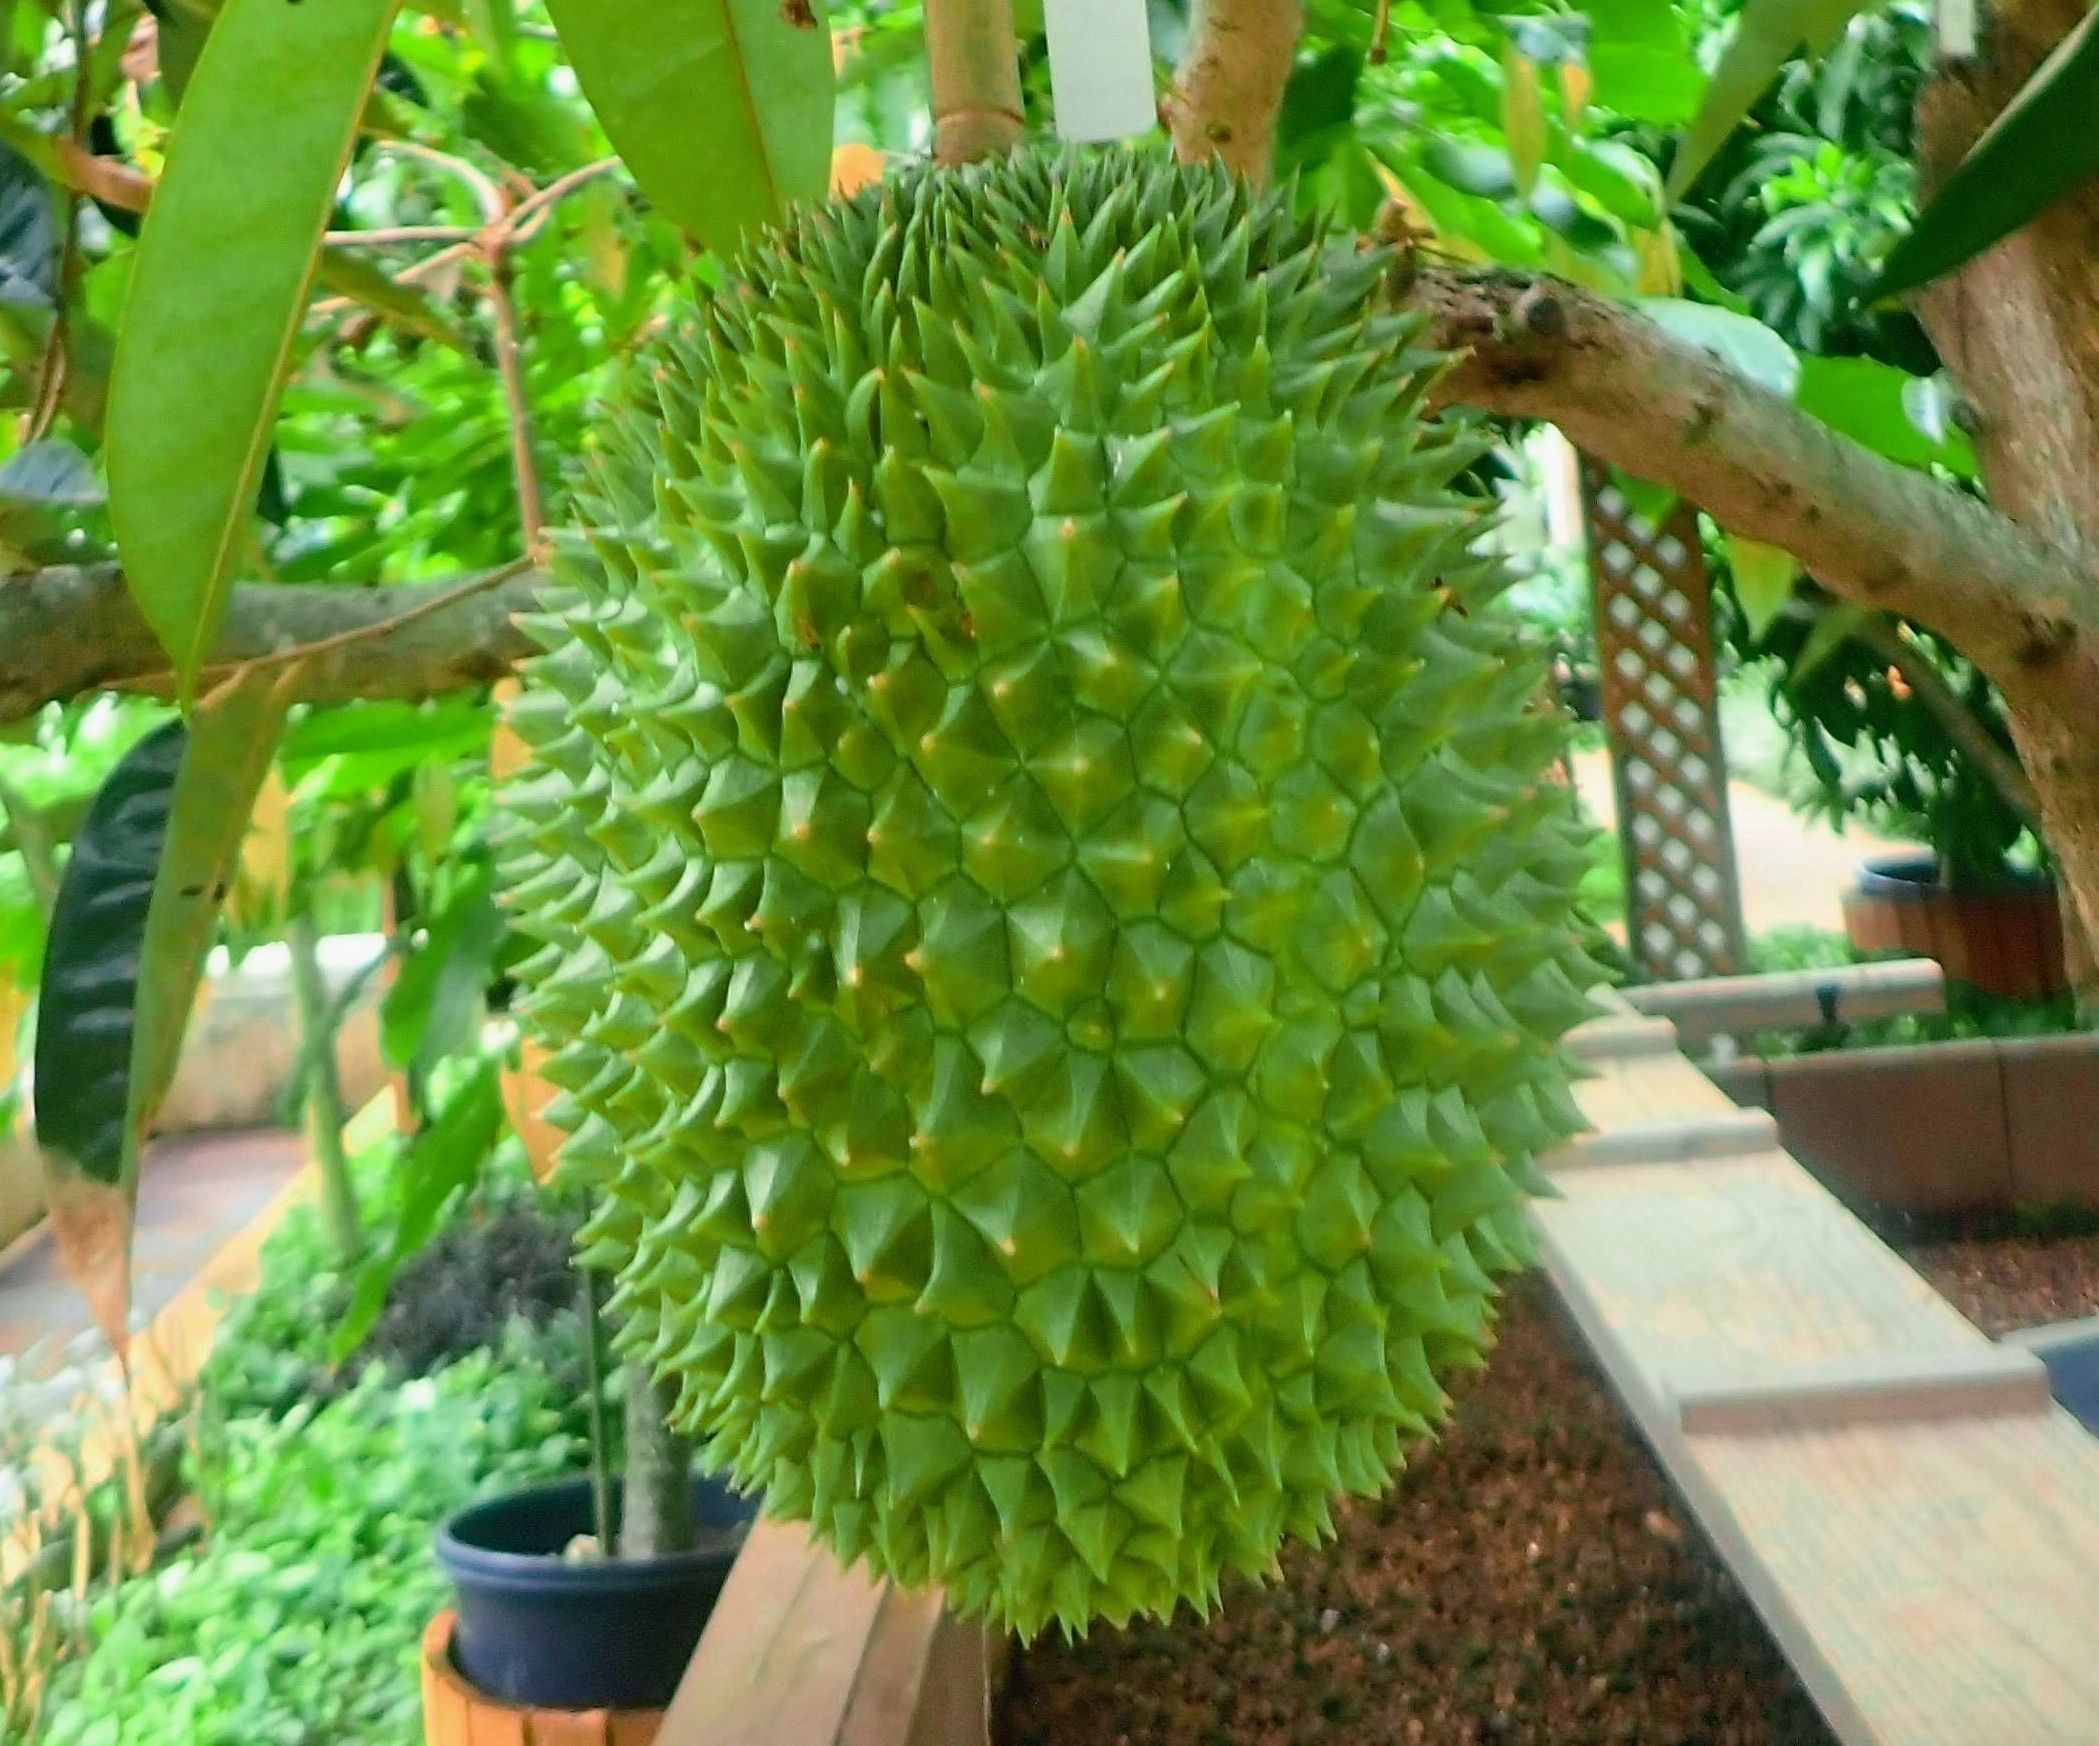 日本で唯一 果実の王様 が見られる場所が沖縄に 実がなるのは3年連続 栽培者 独特の臭いも楽しんで 沖縄タイムス プラス ニュース 沖縄タイムス プラス